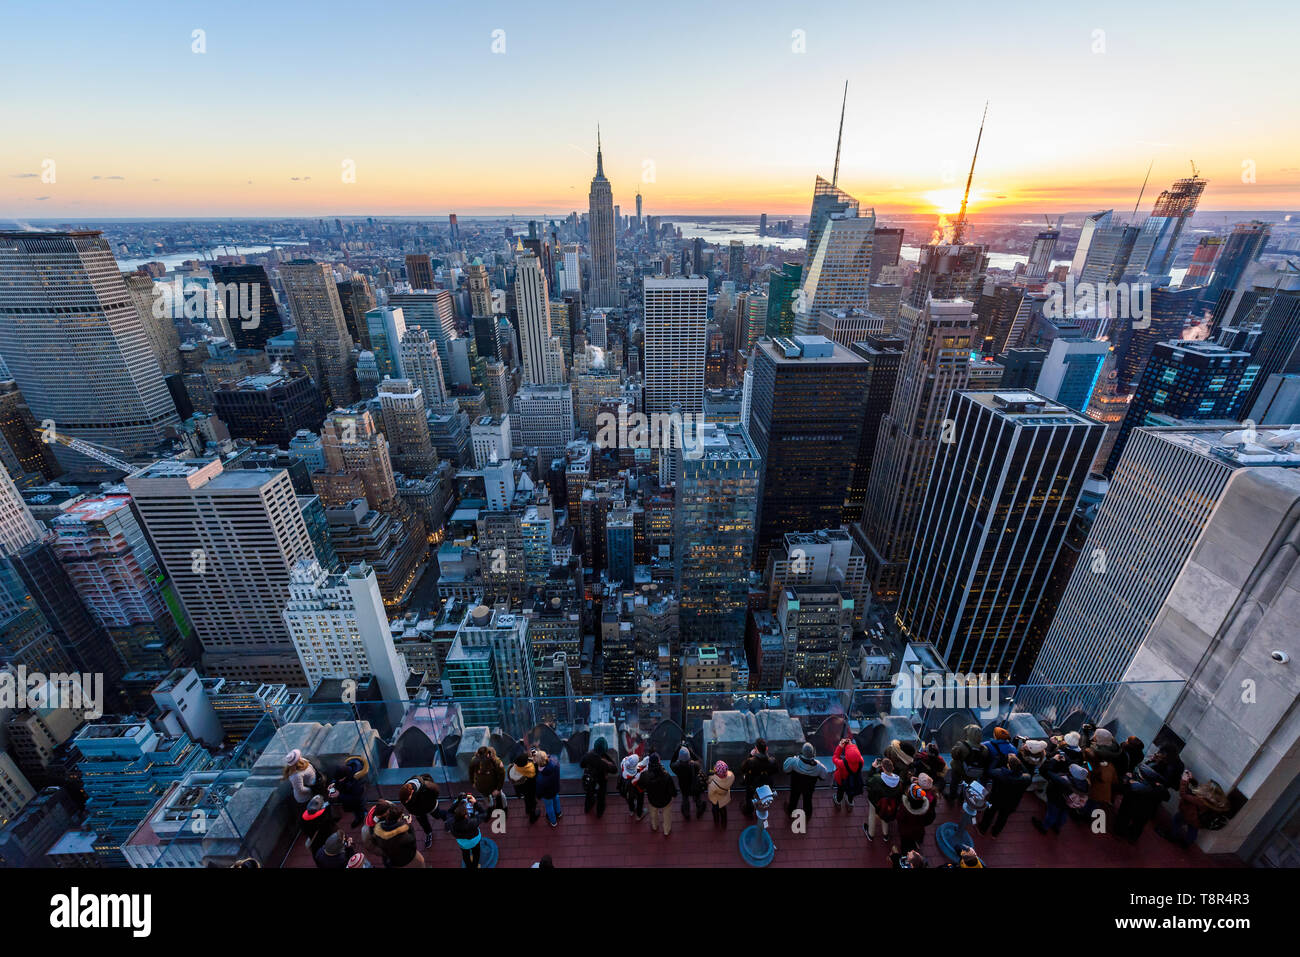 Panorama di Midtown skyline di Manhattan con l' Empire State Building dal Rockefeller Center Observation Deck. Parte superiore del Rock - New York Cit Foto Stock